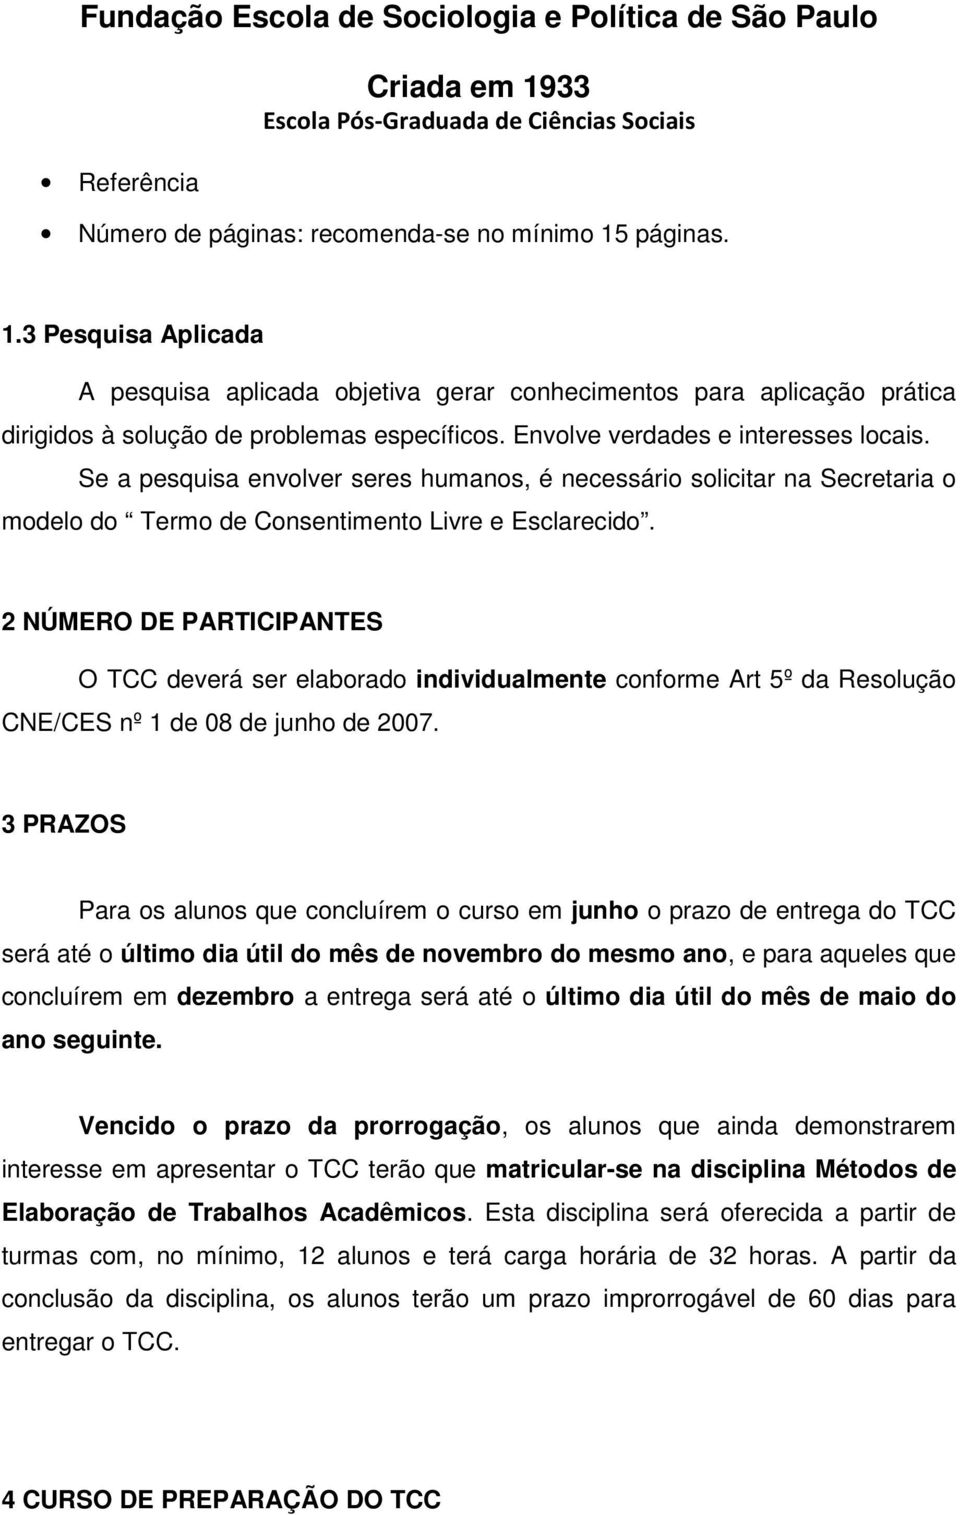 2 NÚMERO DE PARTICIPANTES O TCC deverá ser elaborado individualmente conforme Art 5º da Resolução CNE/CES nº 1 de 08 de junho de 2007.